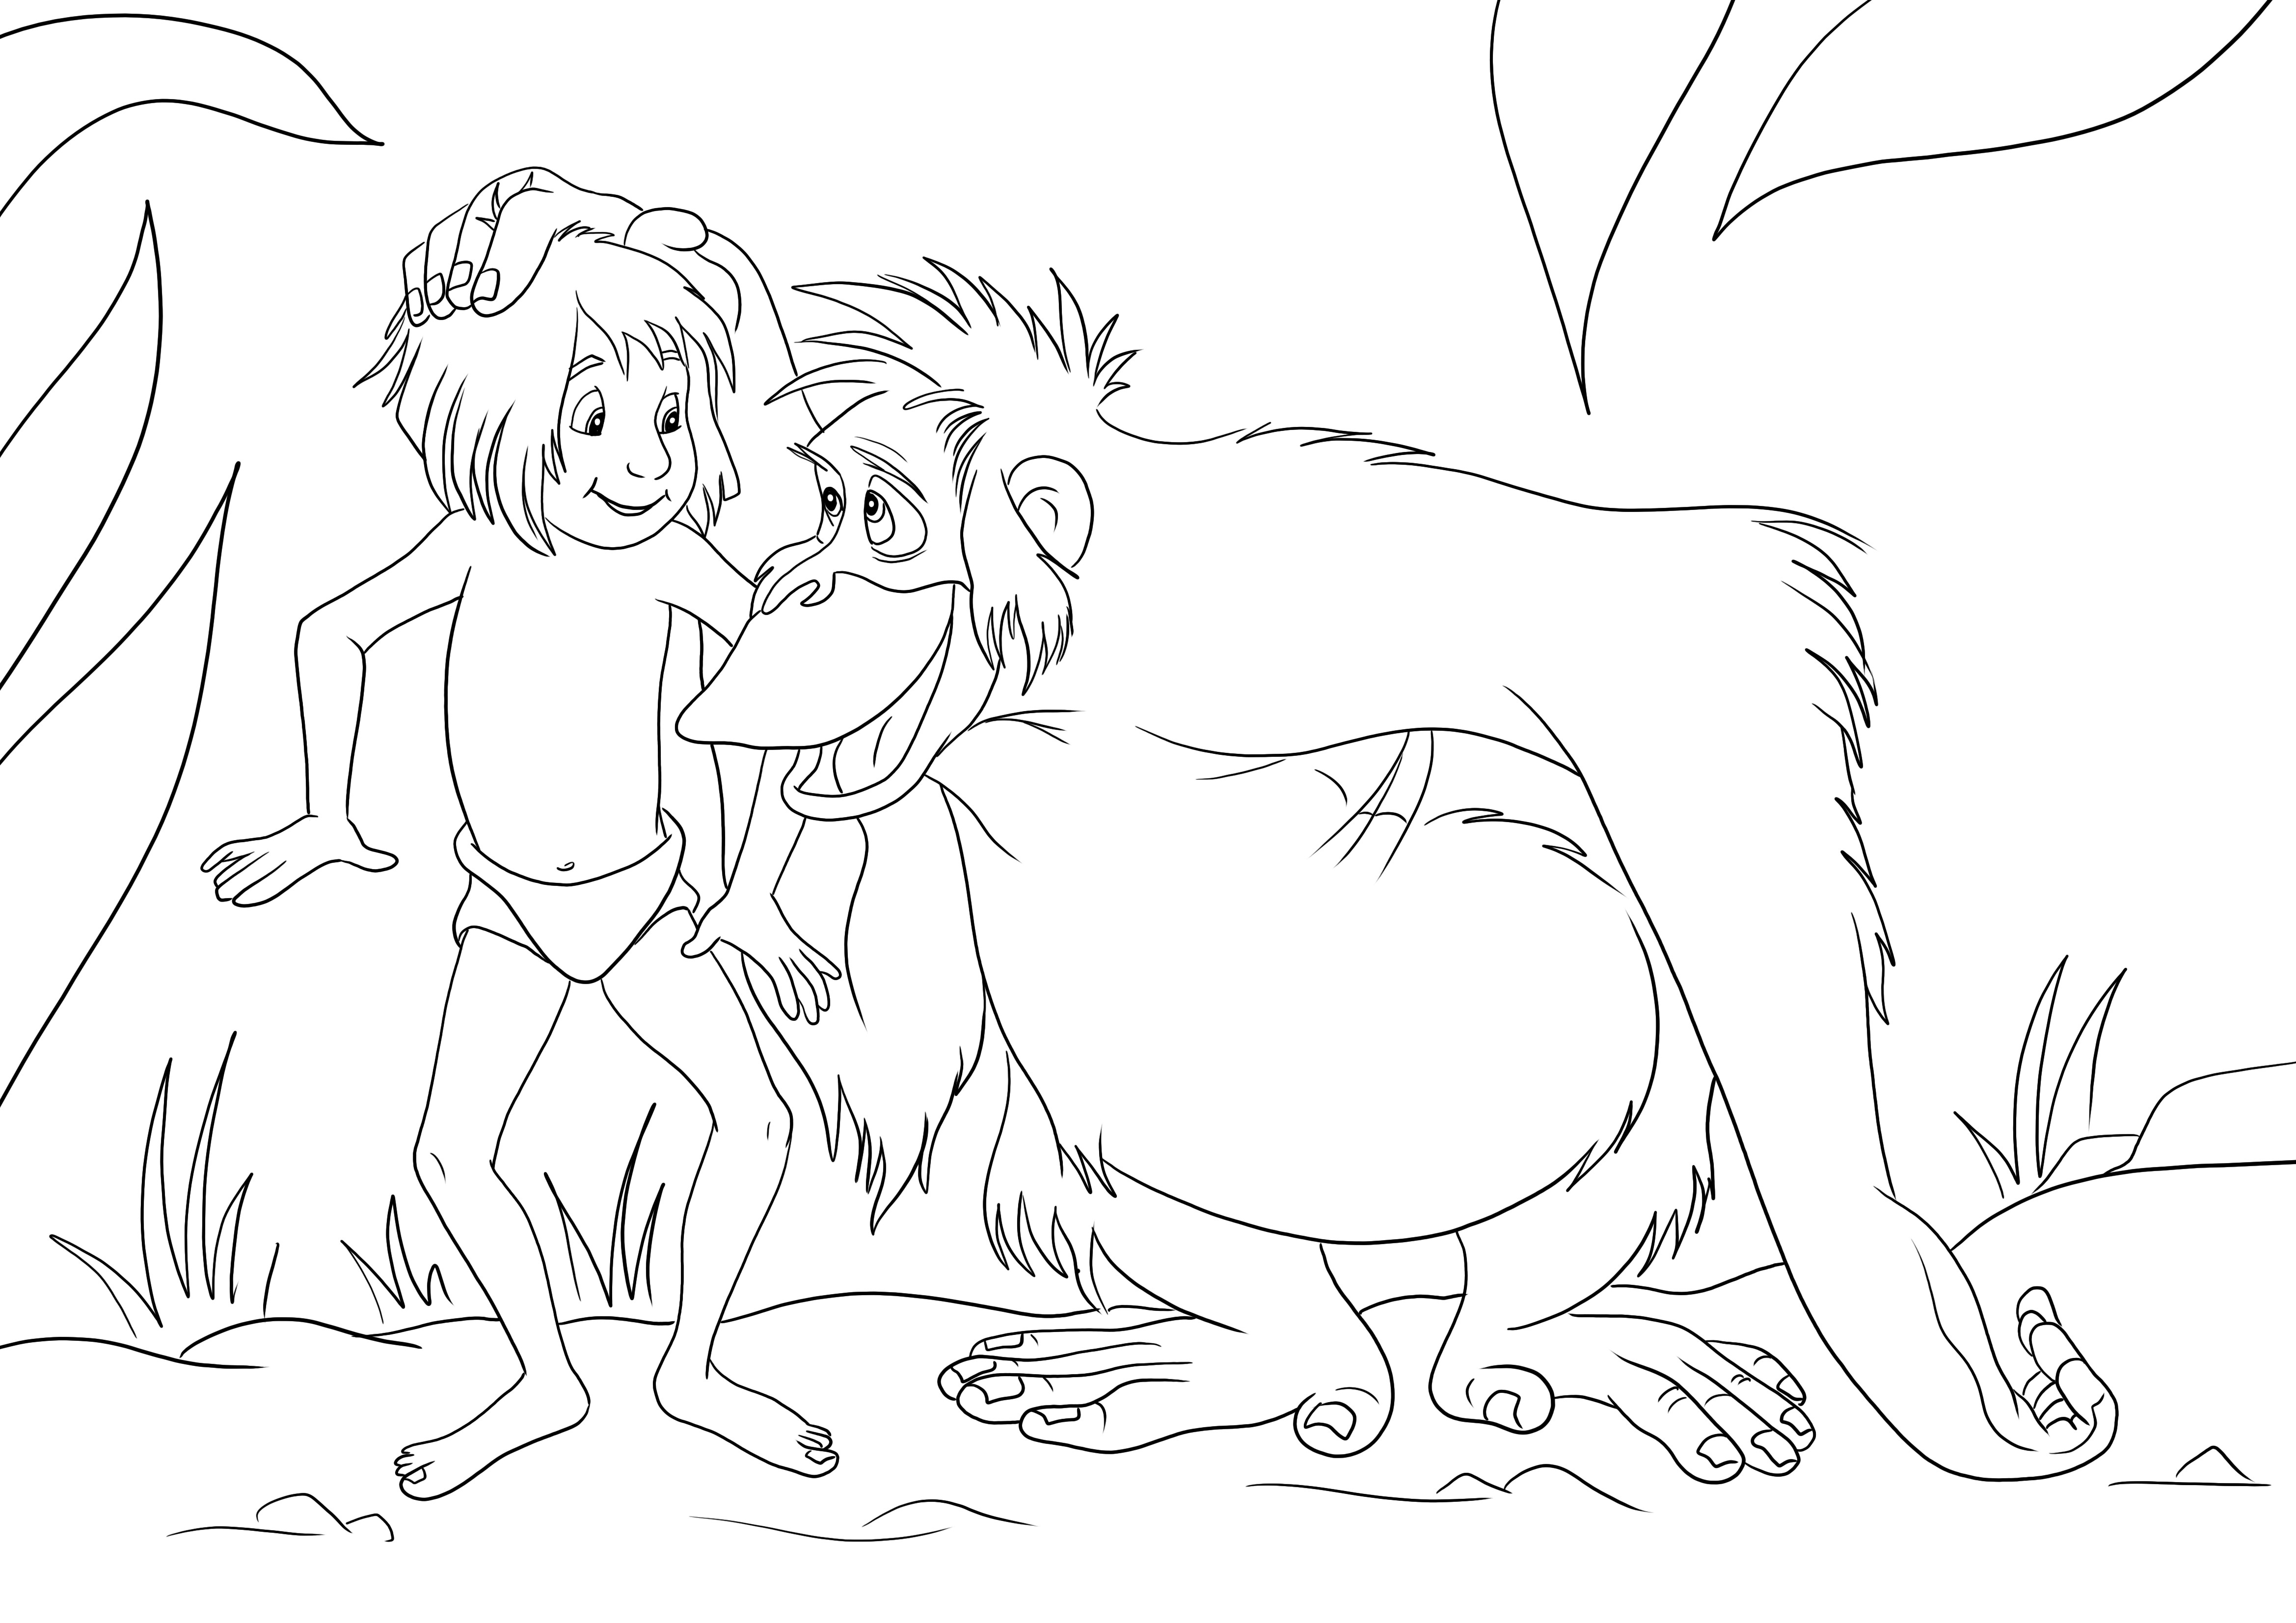 Mowgli ve Kral Louie, ücretsiz olarak indirilmeye hazır kolay bir boyama sayfasıdır.